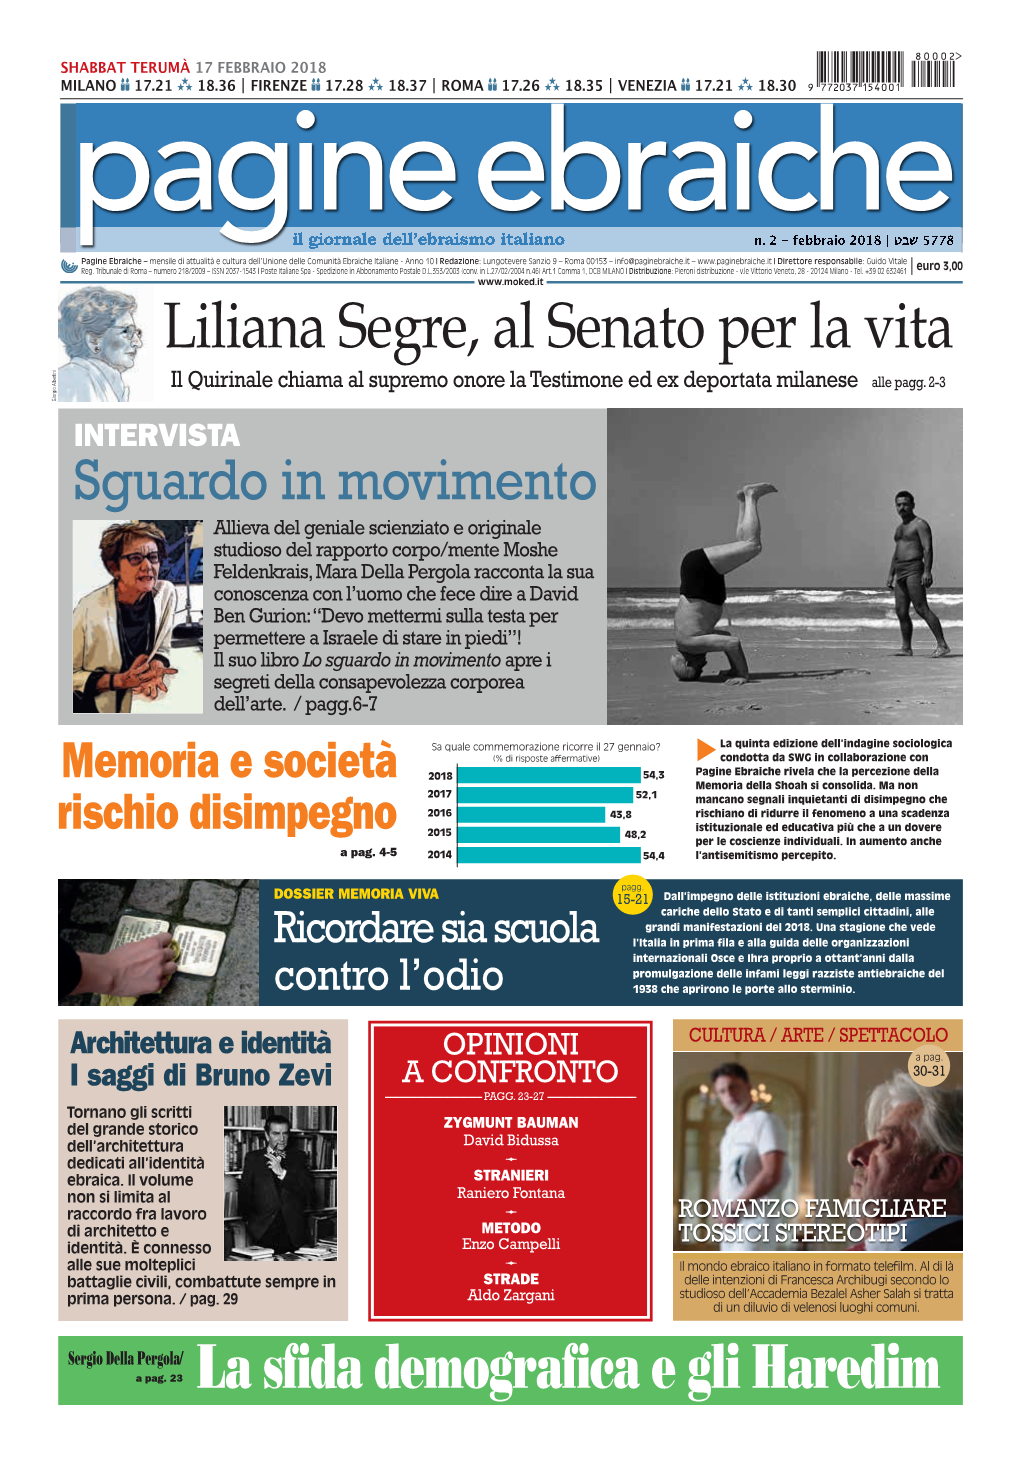 Liliana Segre, Al Senato Per La Vita Il Quirinale Chiama Al Supremo Onore La Testimone Ed Ex Deportata Milanese Alle Pagg